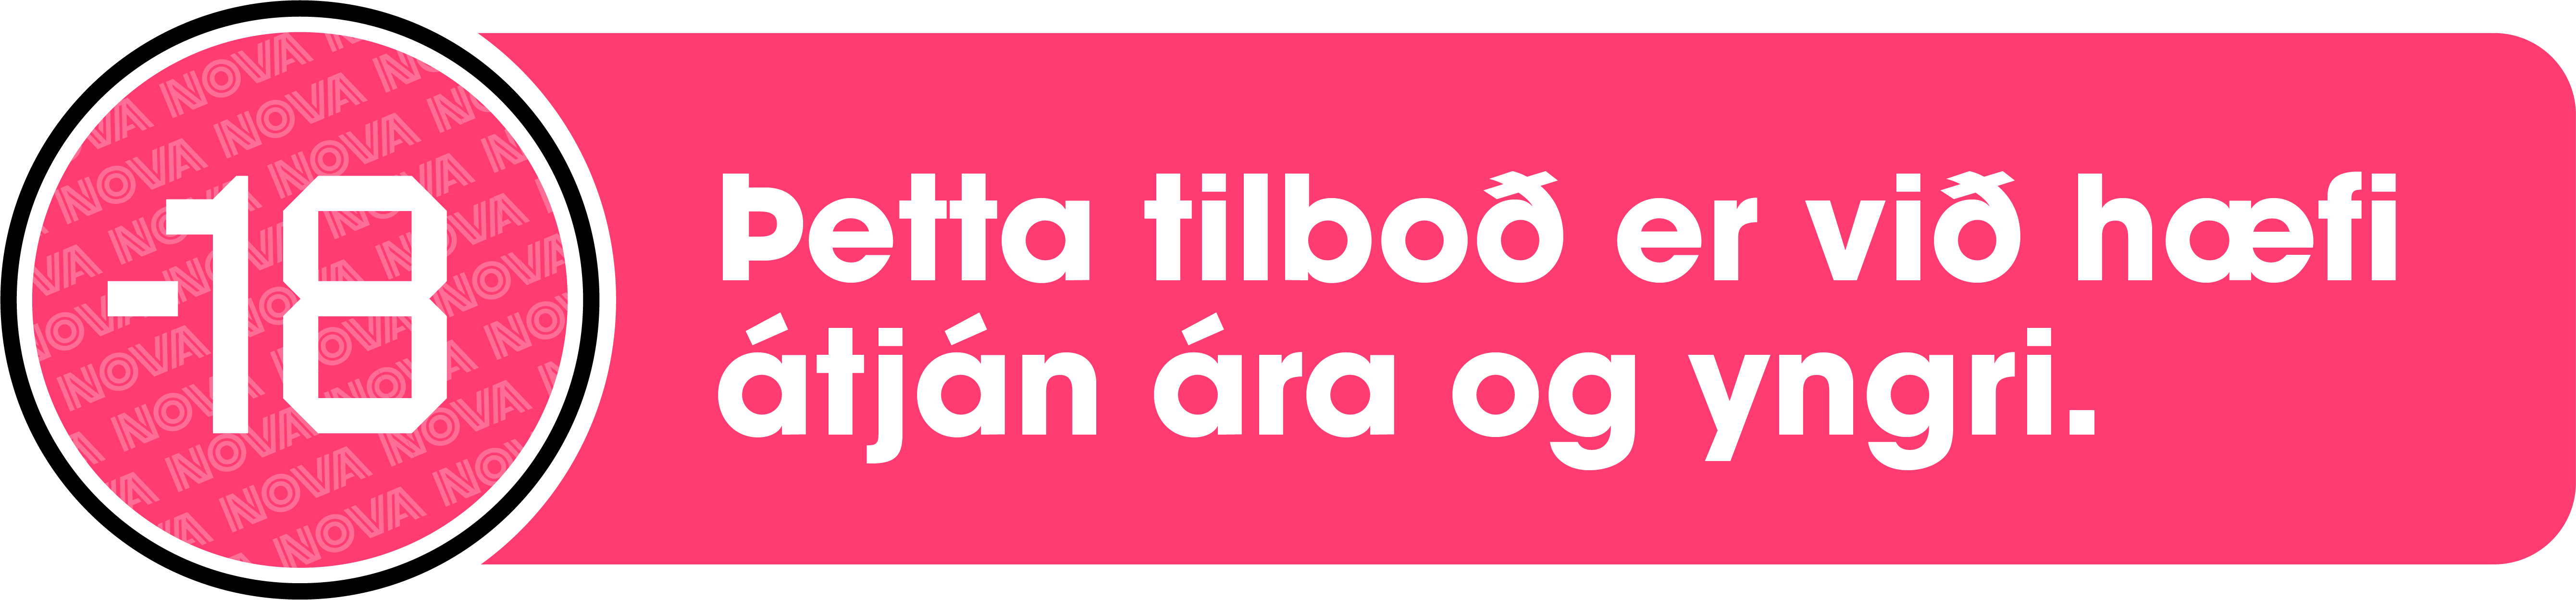 Þetta tilboð er við hæfi átján ára og yngri.